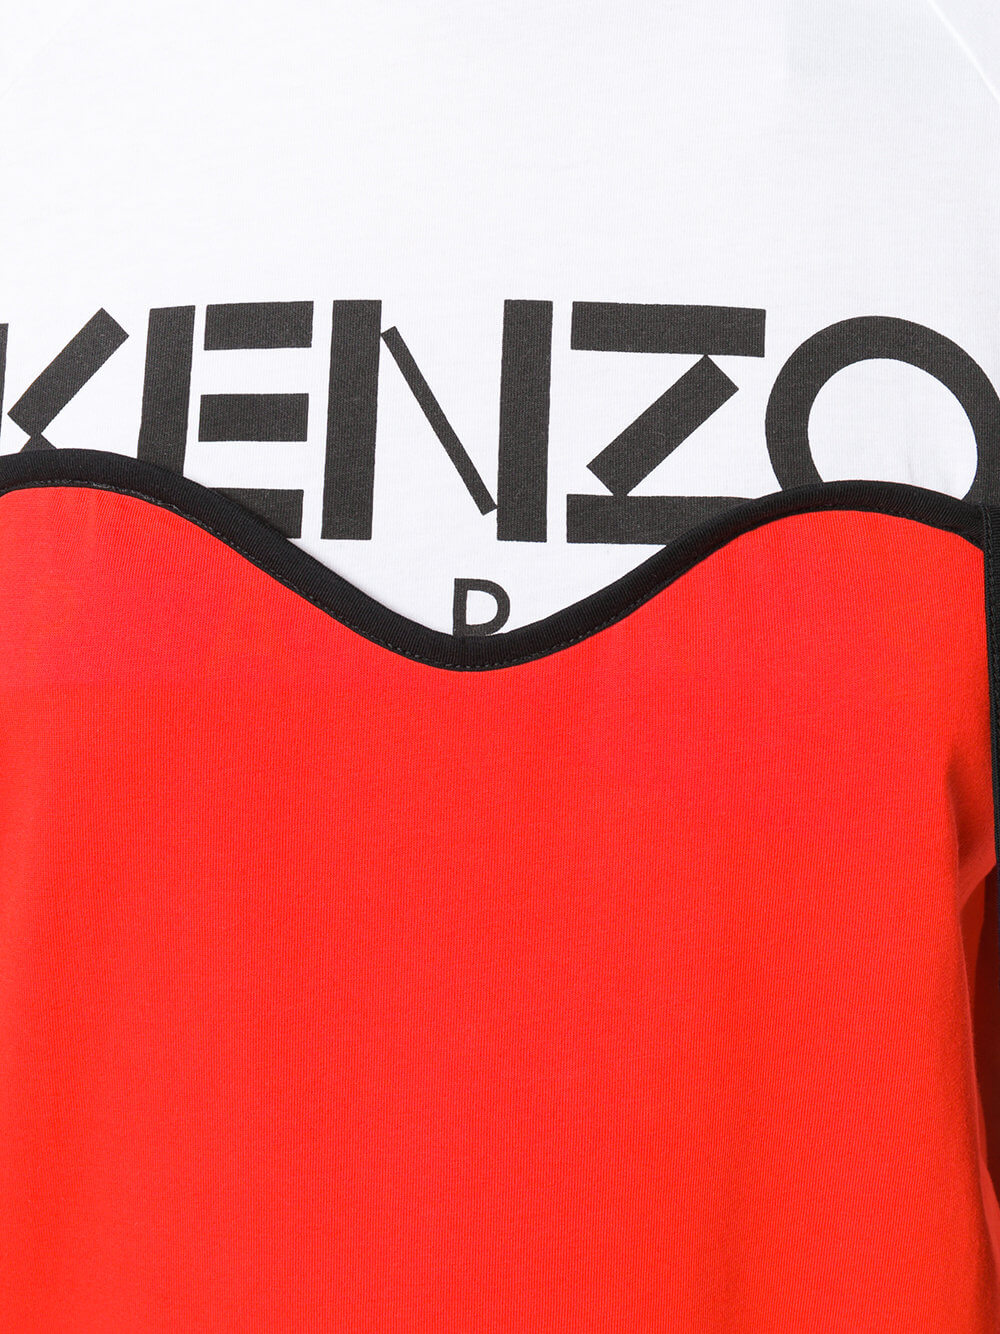 KENZO T-SHIRT-Libas Trendy Fashion Store